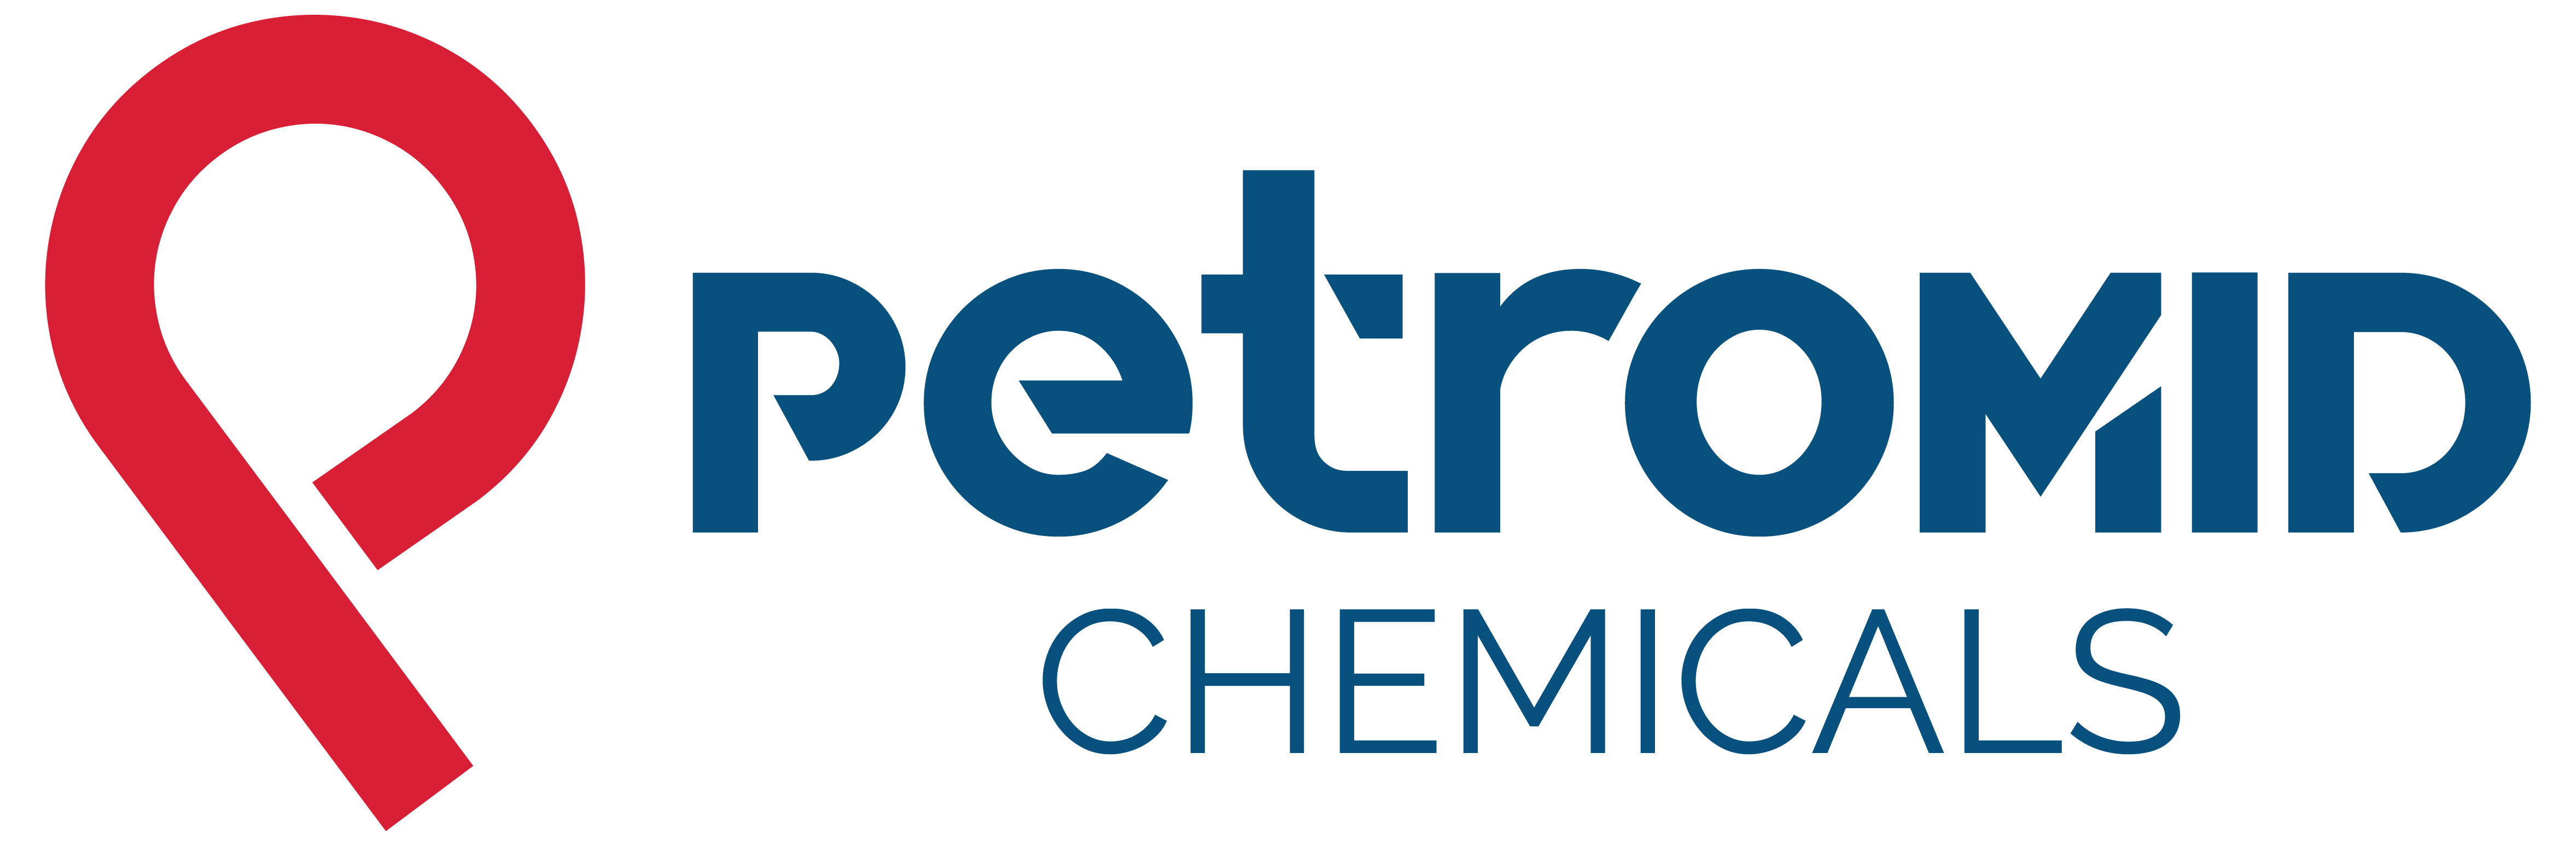 PETROMID CHEMICALS